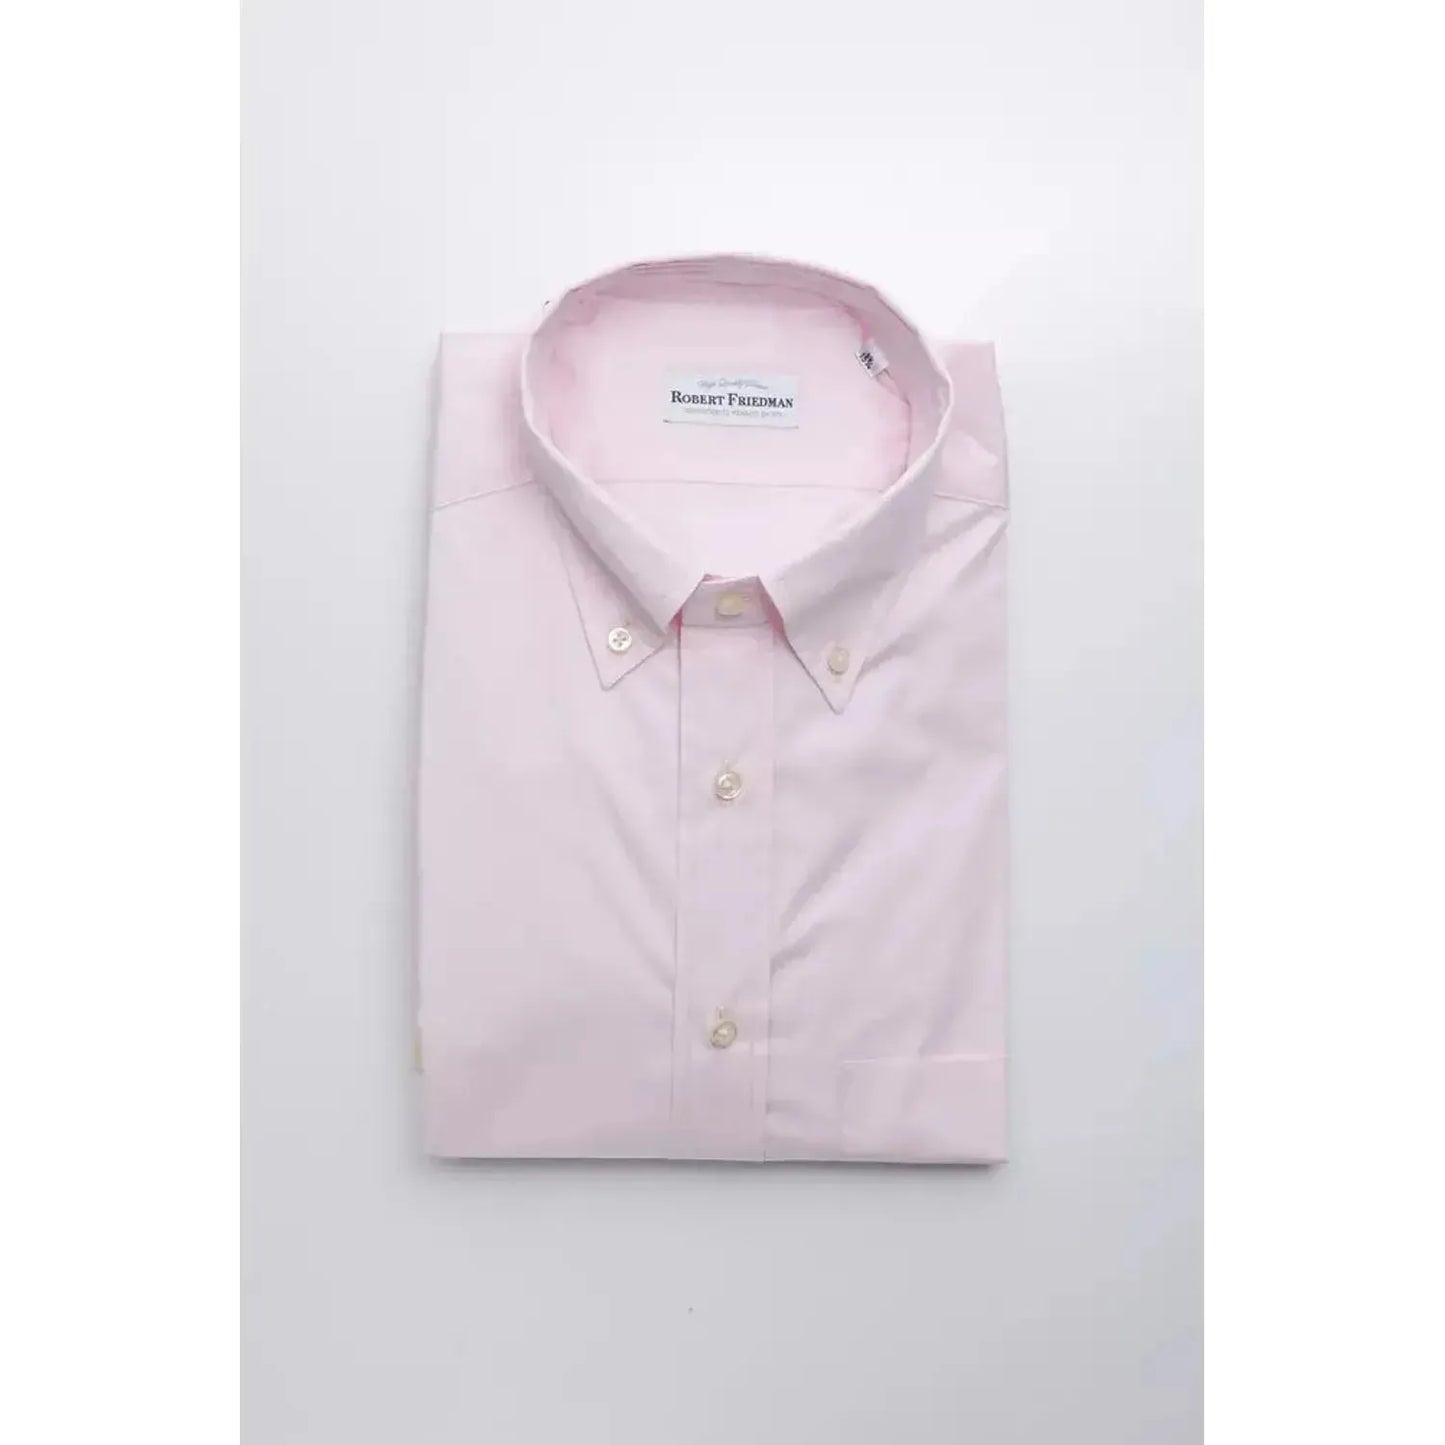 Robert Friedman Elegant Pink Cotton Button-Down Shirt pink-cotton-shirt-6 stock_product_image_20444_48412589-25-654a90b6-a75.webp